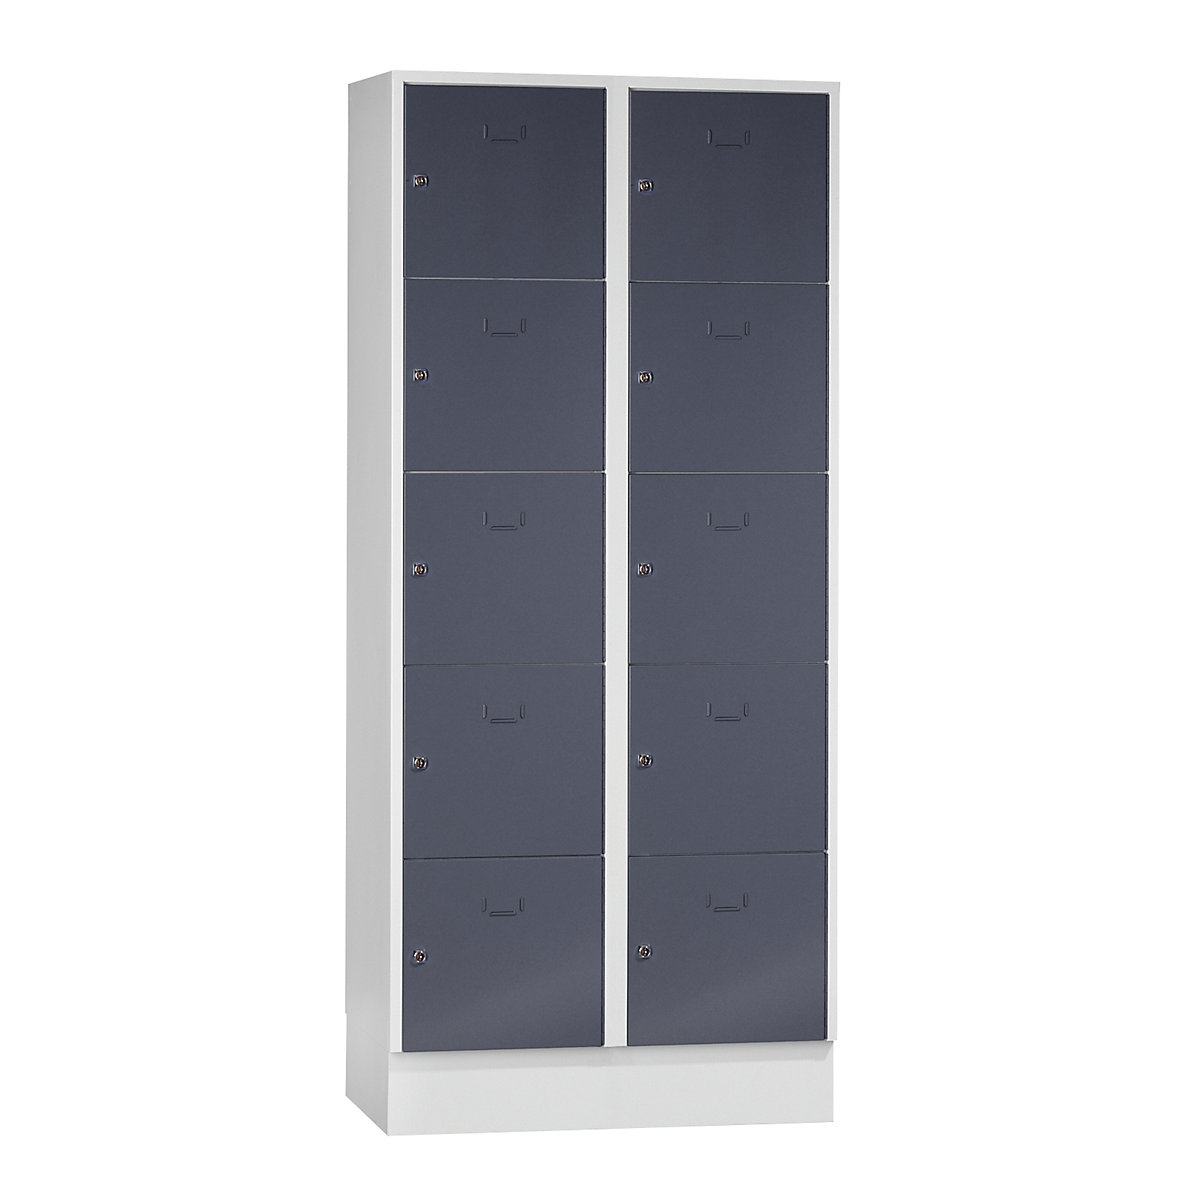 Vestiaire modulaire à casiers verrouillables – Wolf, 10 casiers, largeur 400 mm, gris basalte / gris clair